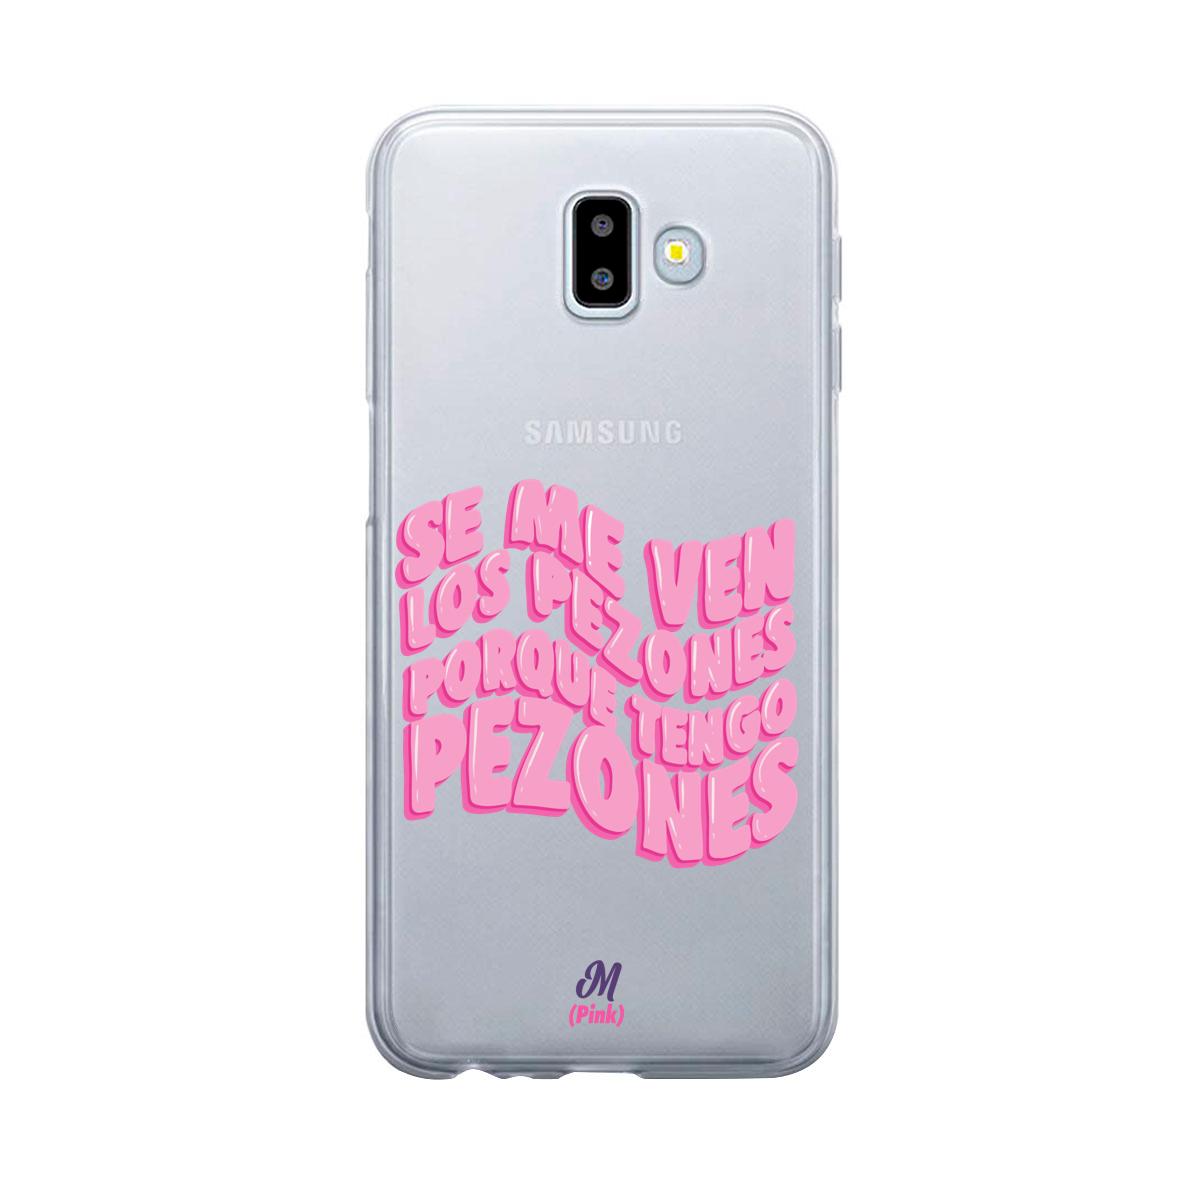 Case para Samsung J6 Plus Tengo pezones - Mandala Cases